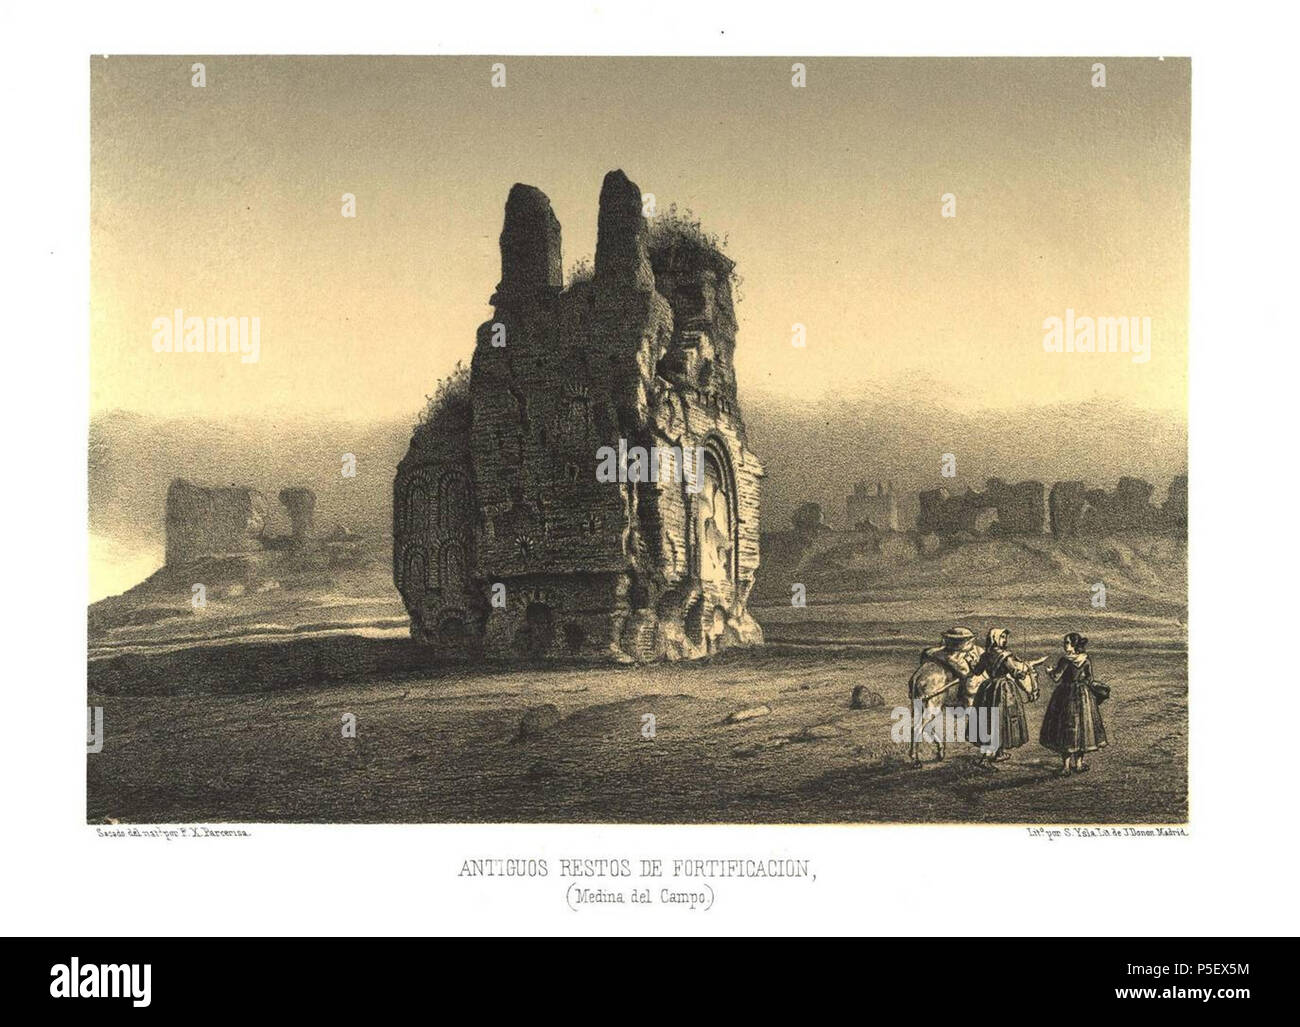 110 Antiguos restos de fortificación (Medina del Campo) (1861) - Parcerisa, F. J. Stock Photo